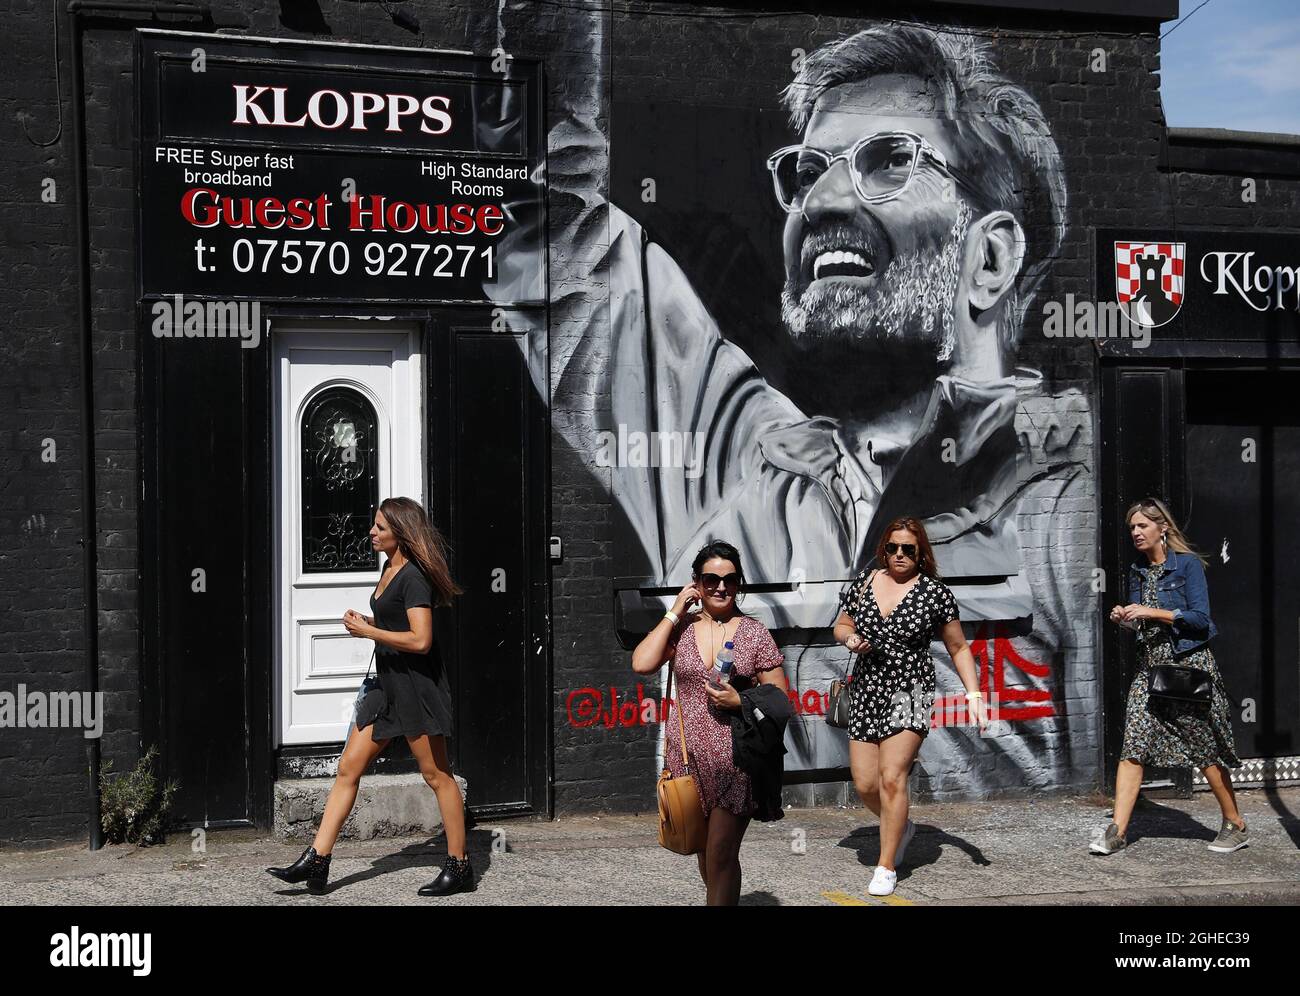 Die Frauen laufen vor dem Premier League-Spiel gegen Arsenal in Anfield, Liverpool, an einem Wandbild des Liverpooler Managers Jürgen Klopp vorbei. Bilddatum: 24. August 2019. Bildnachweis sollte lauten: Darren Staples/Sportimage via PA Images Stockfoto